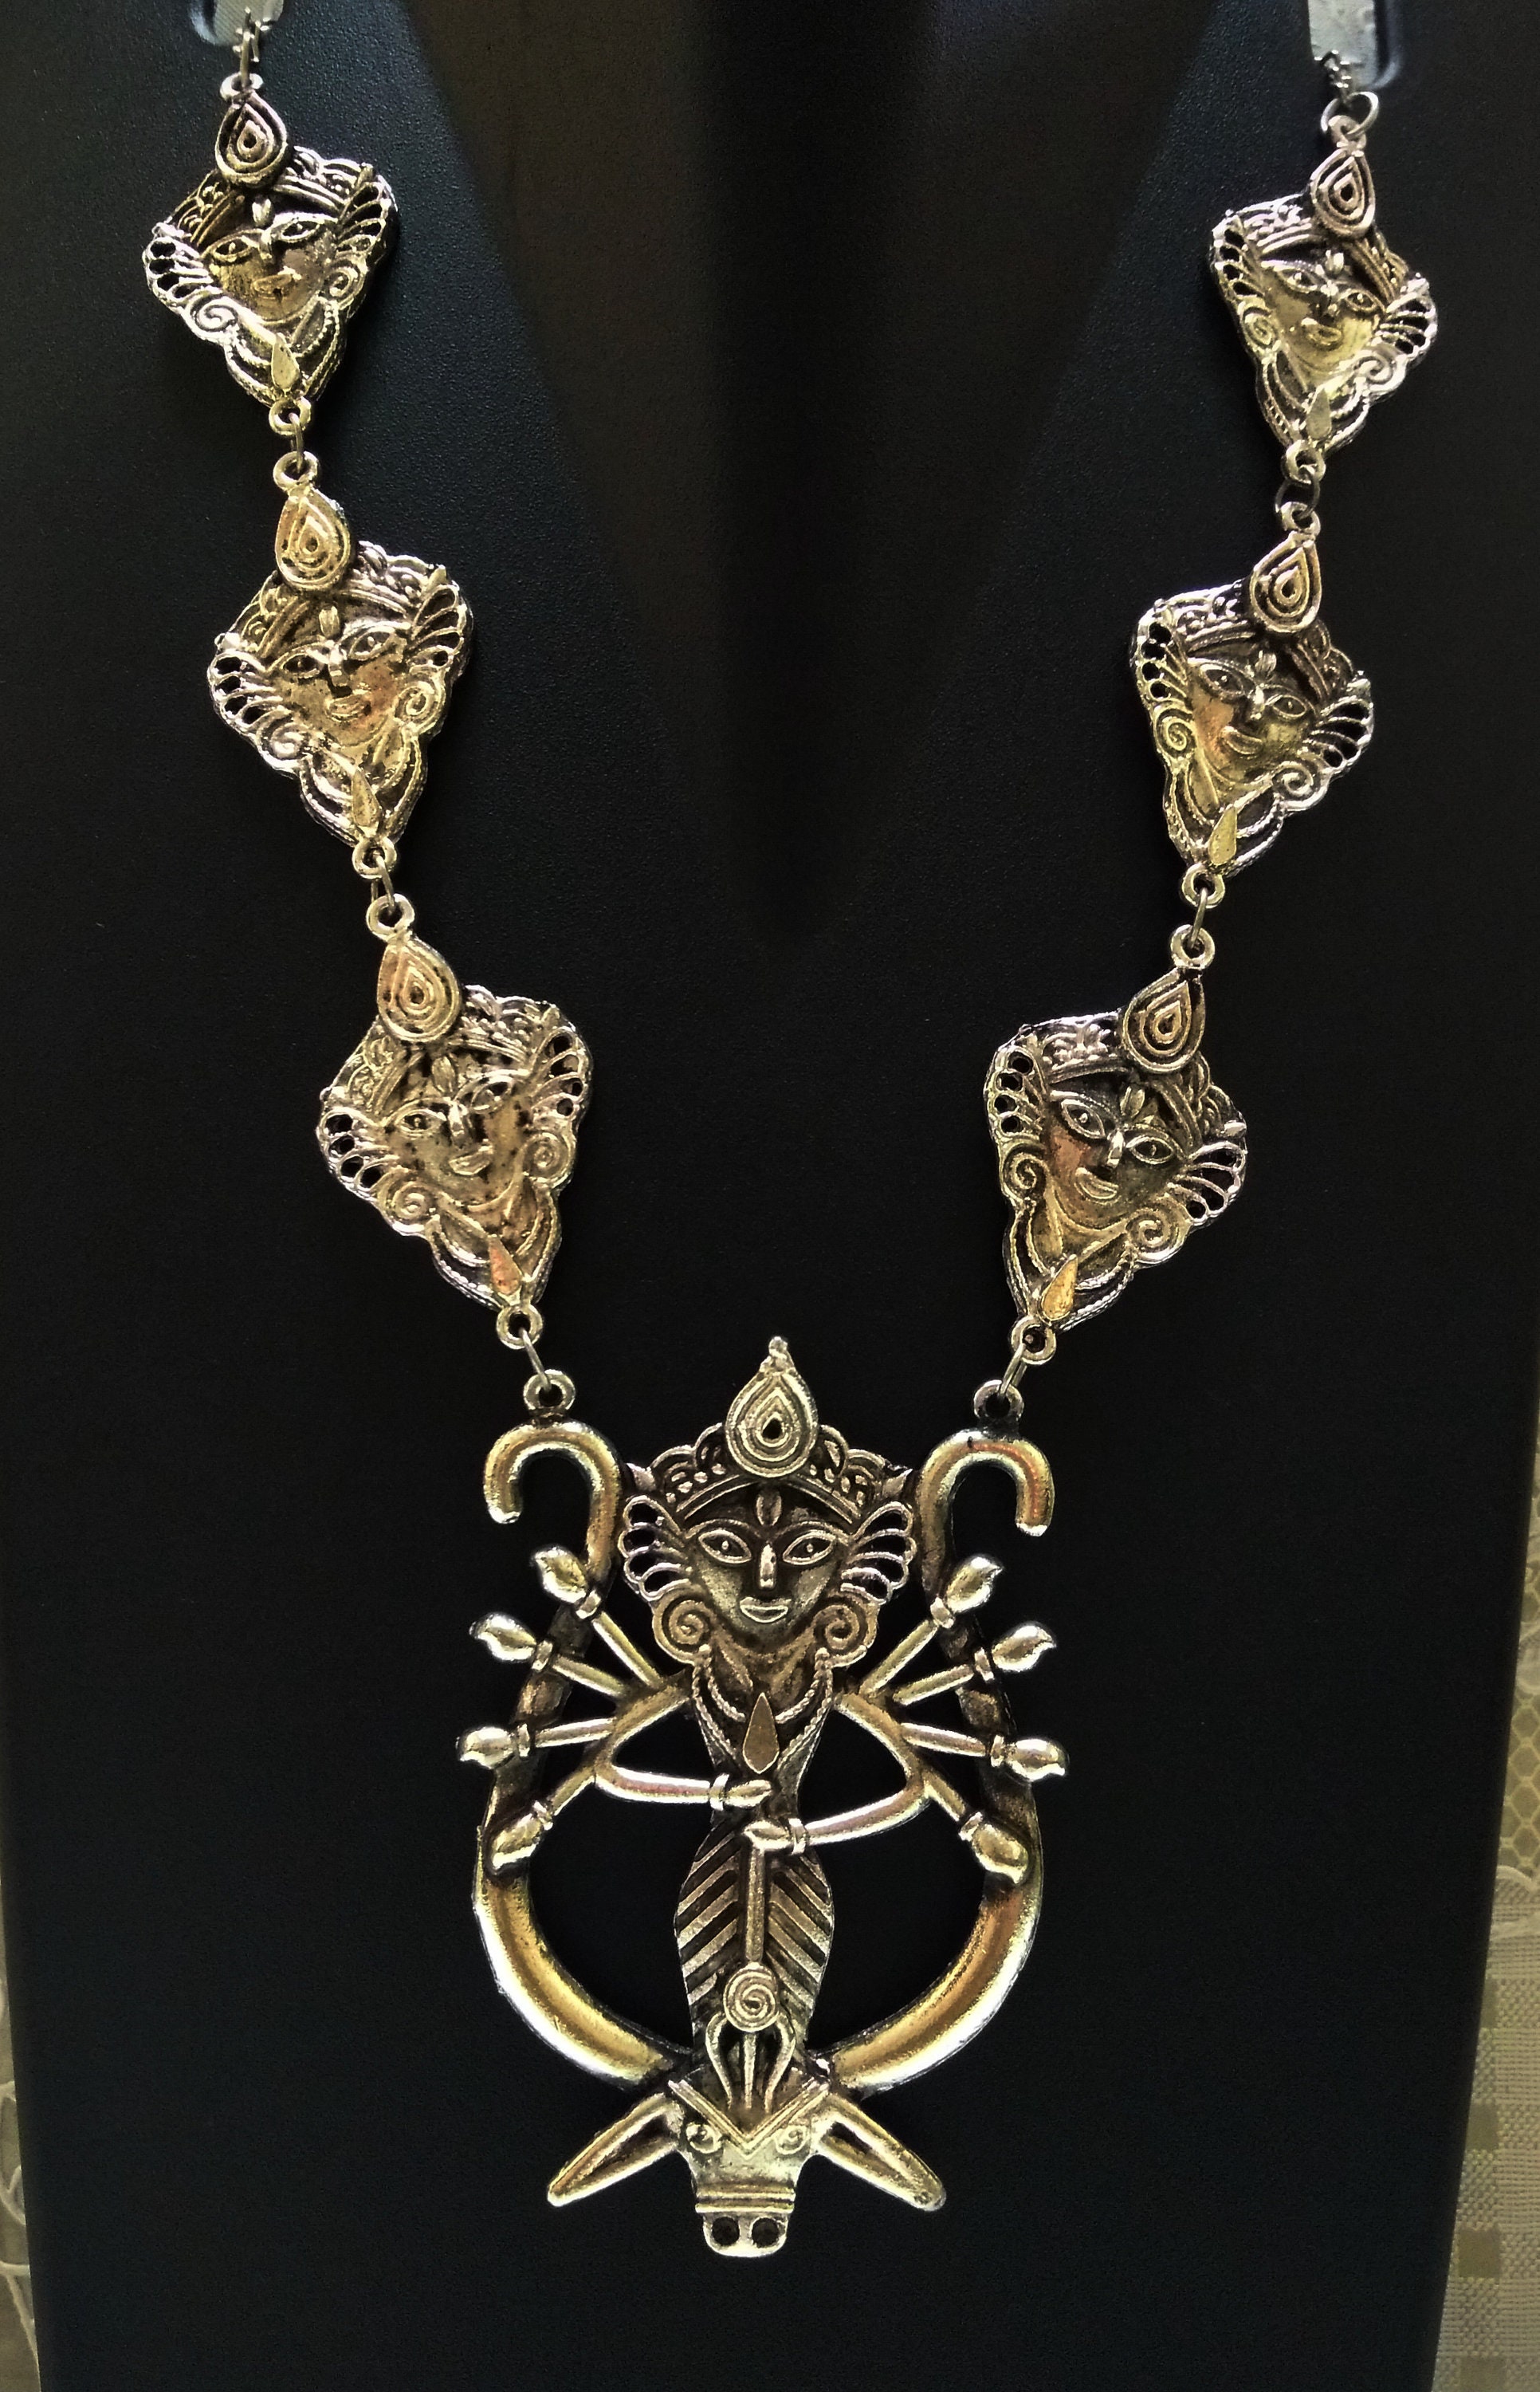 Long large chunky necklaceGoddess Durga pendantFestival | Etsy